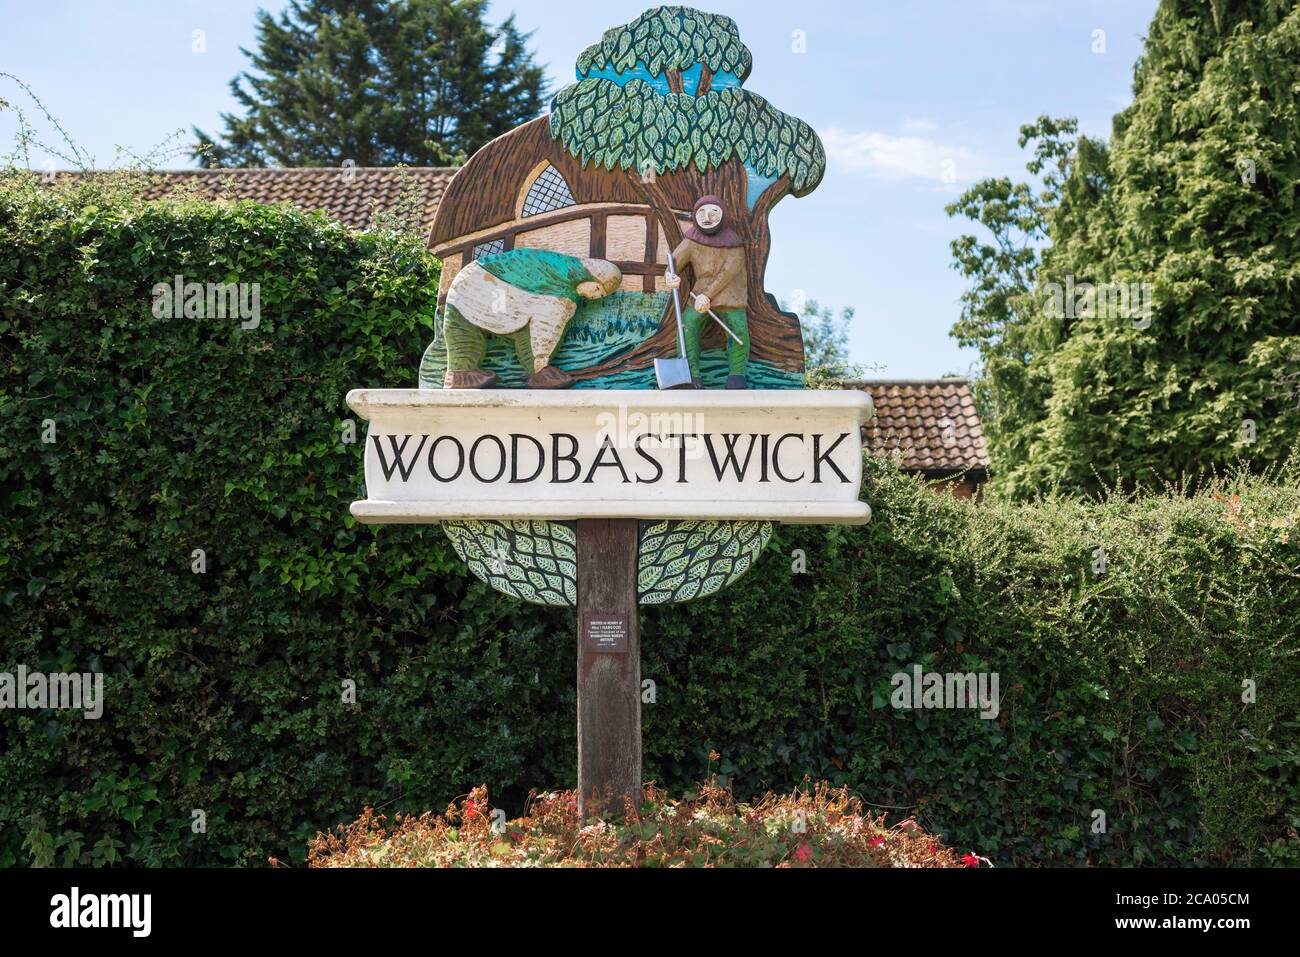 Woodbastwick Village Schild, Ansicht des Schildes im Norfolk Dorf Woodbastwick, das sein sächsisches Erbe als lokaler Produzent von Bastleggings bezeichnet. Stockfoto